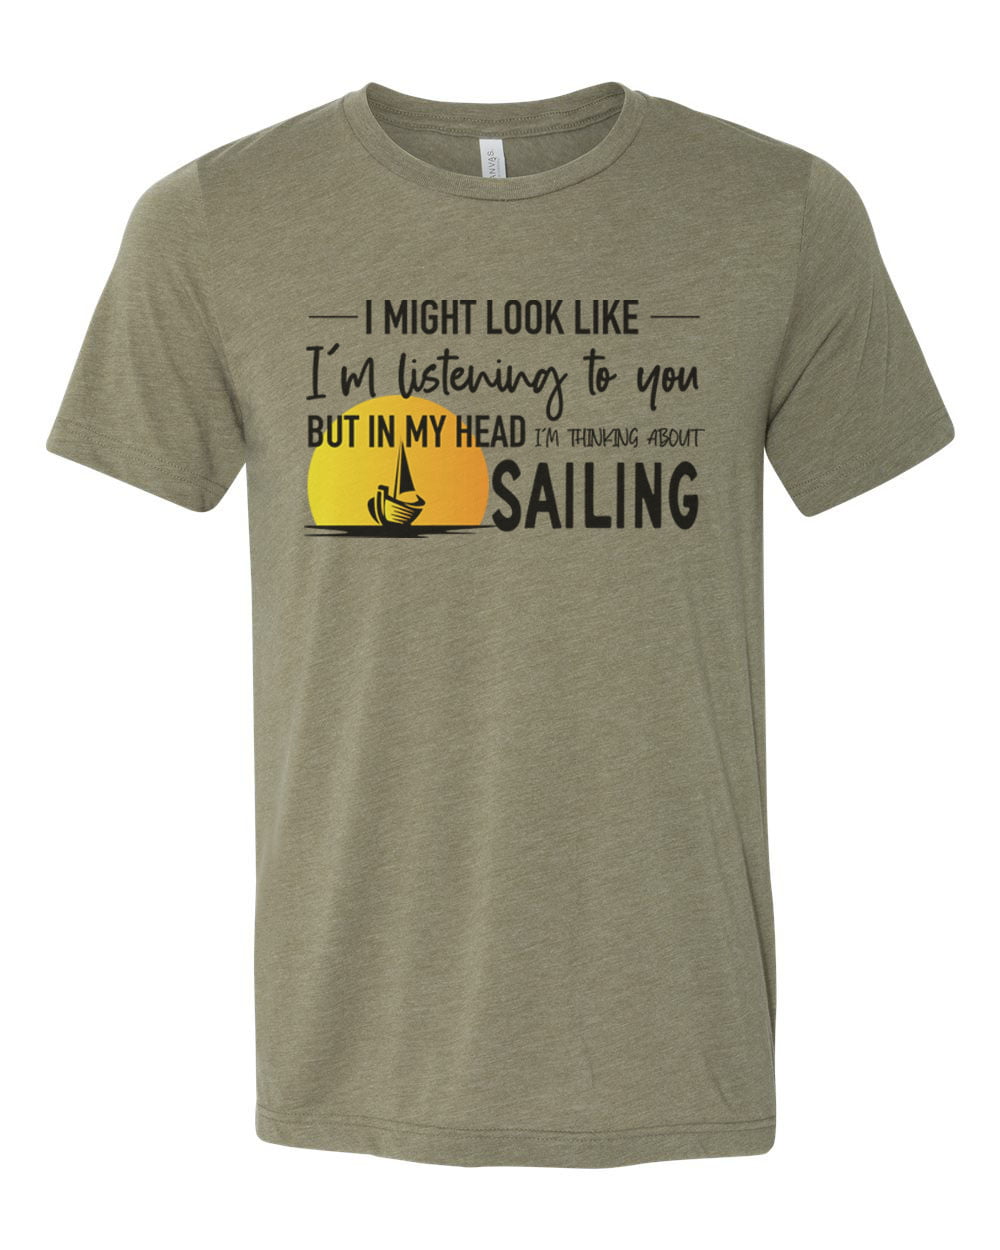 Sailing Shirt, Thinking About Sailing, Gift For Sailor, Sailor